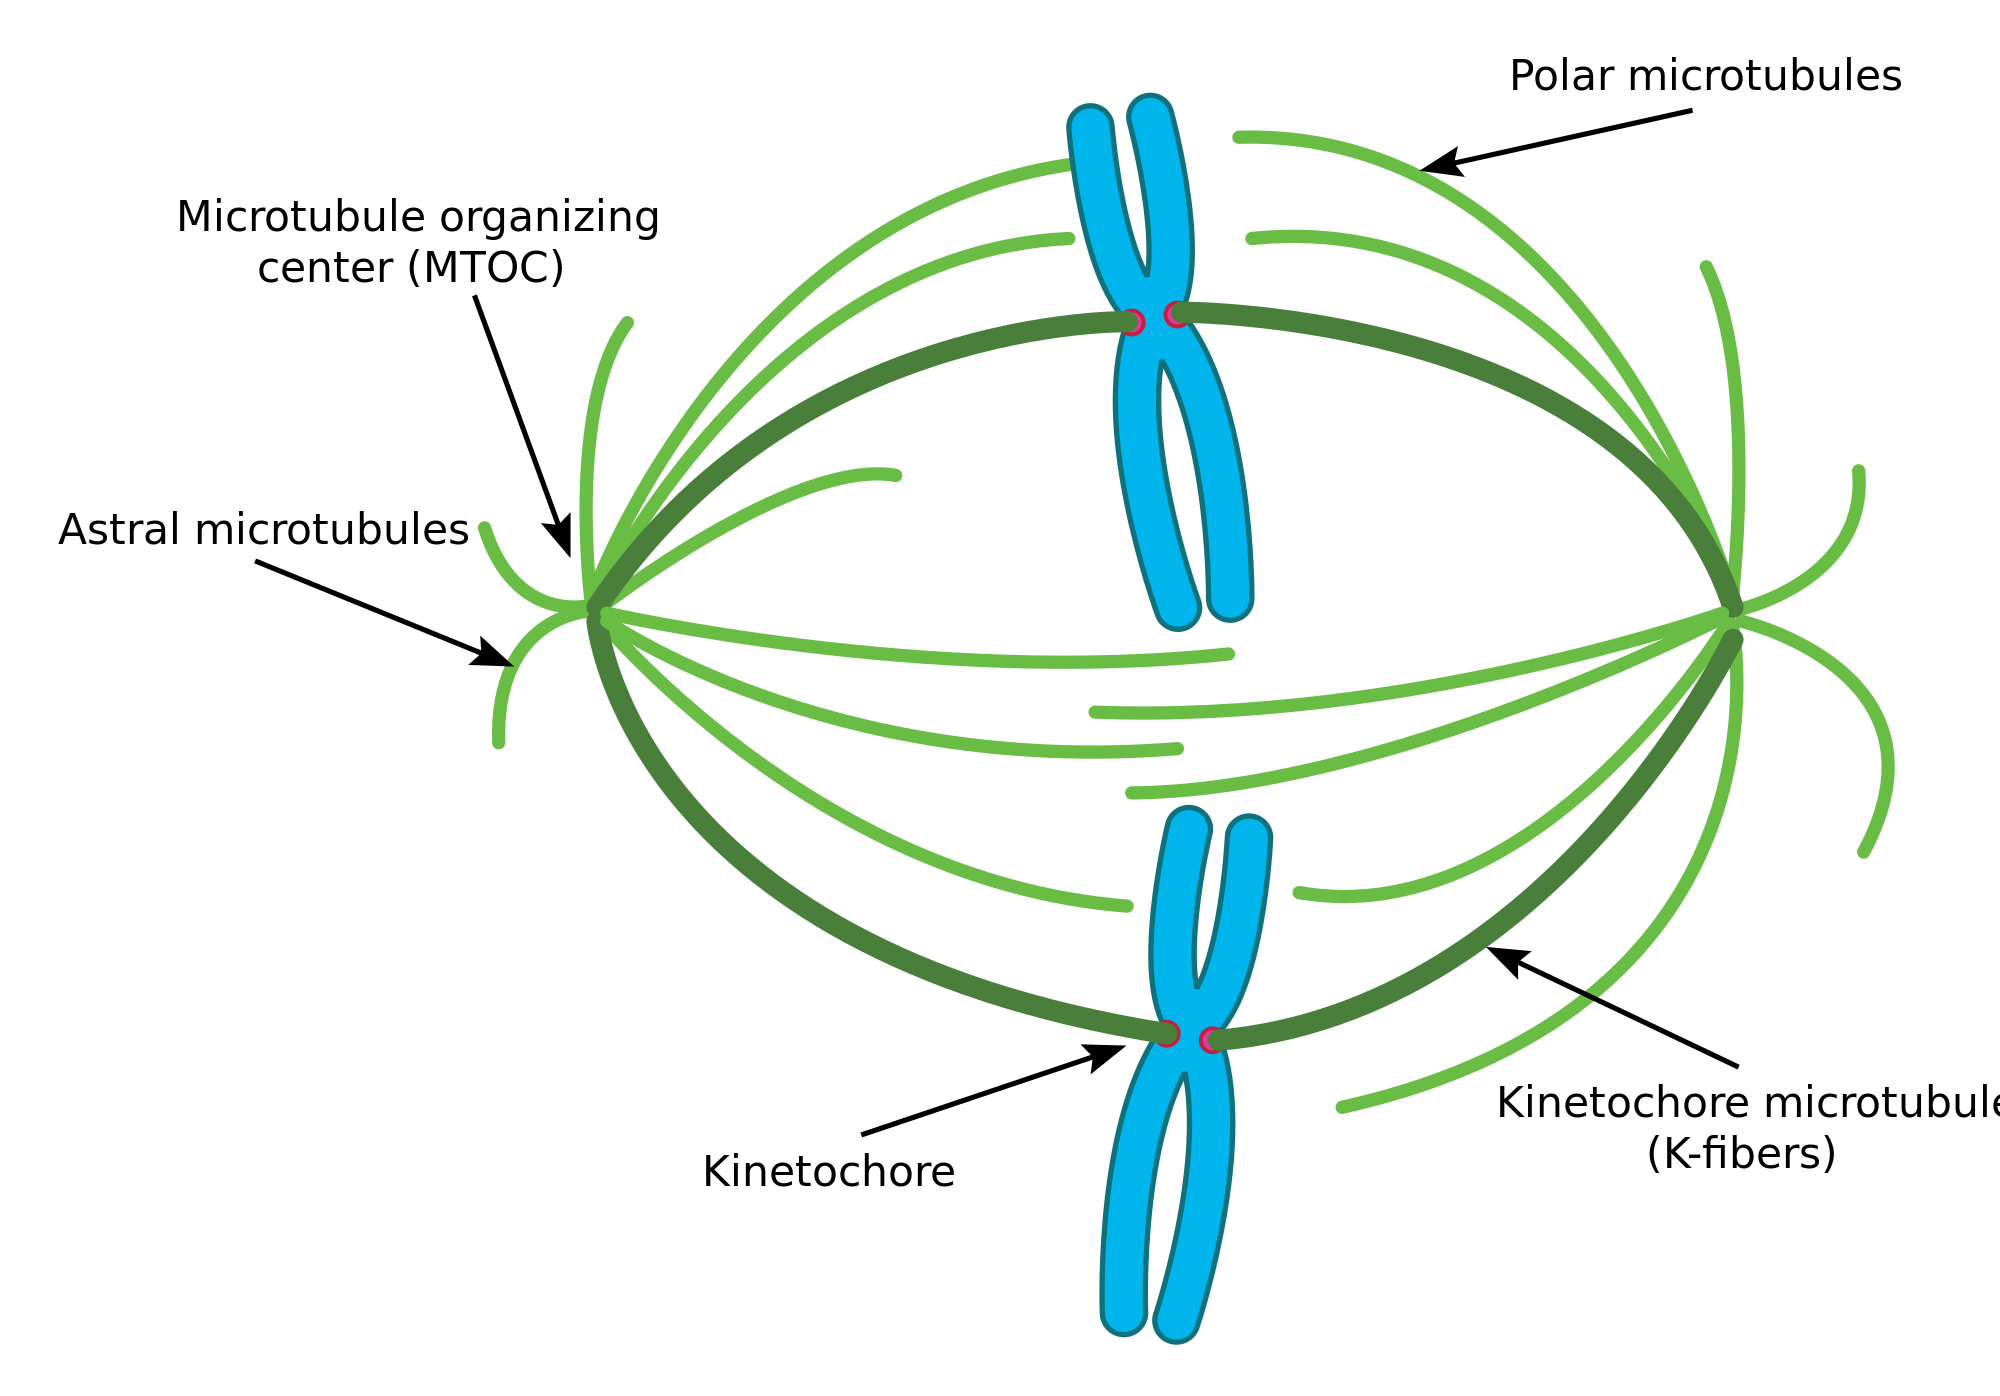 animal cell chromosomes